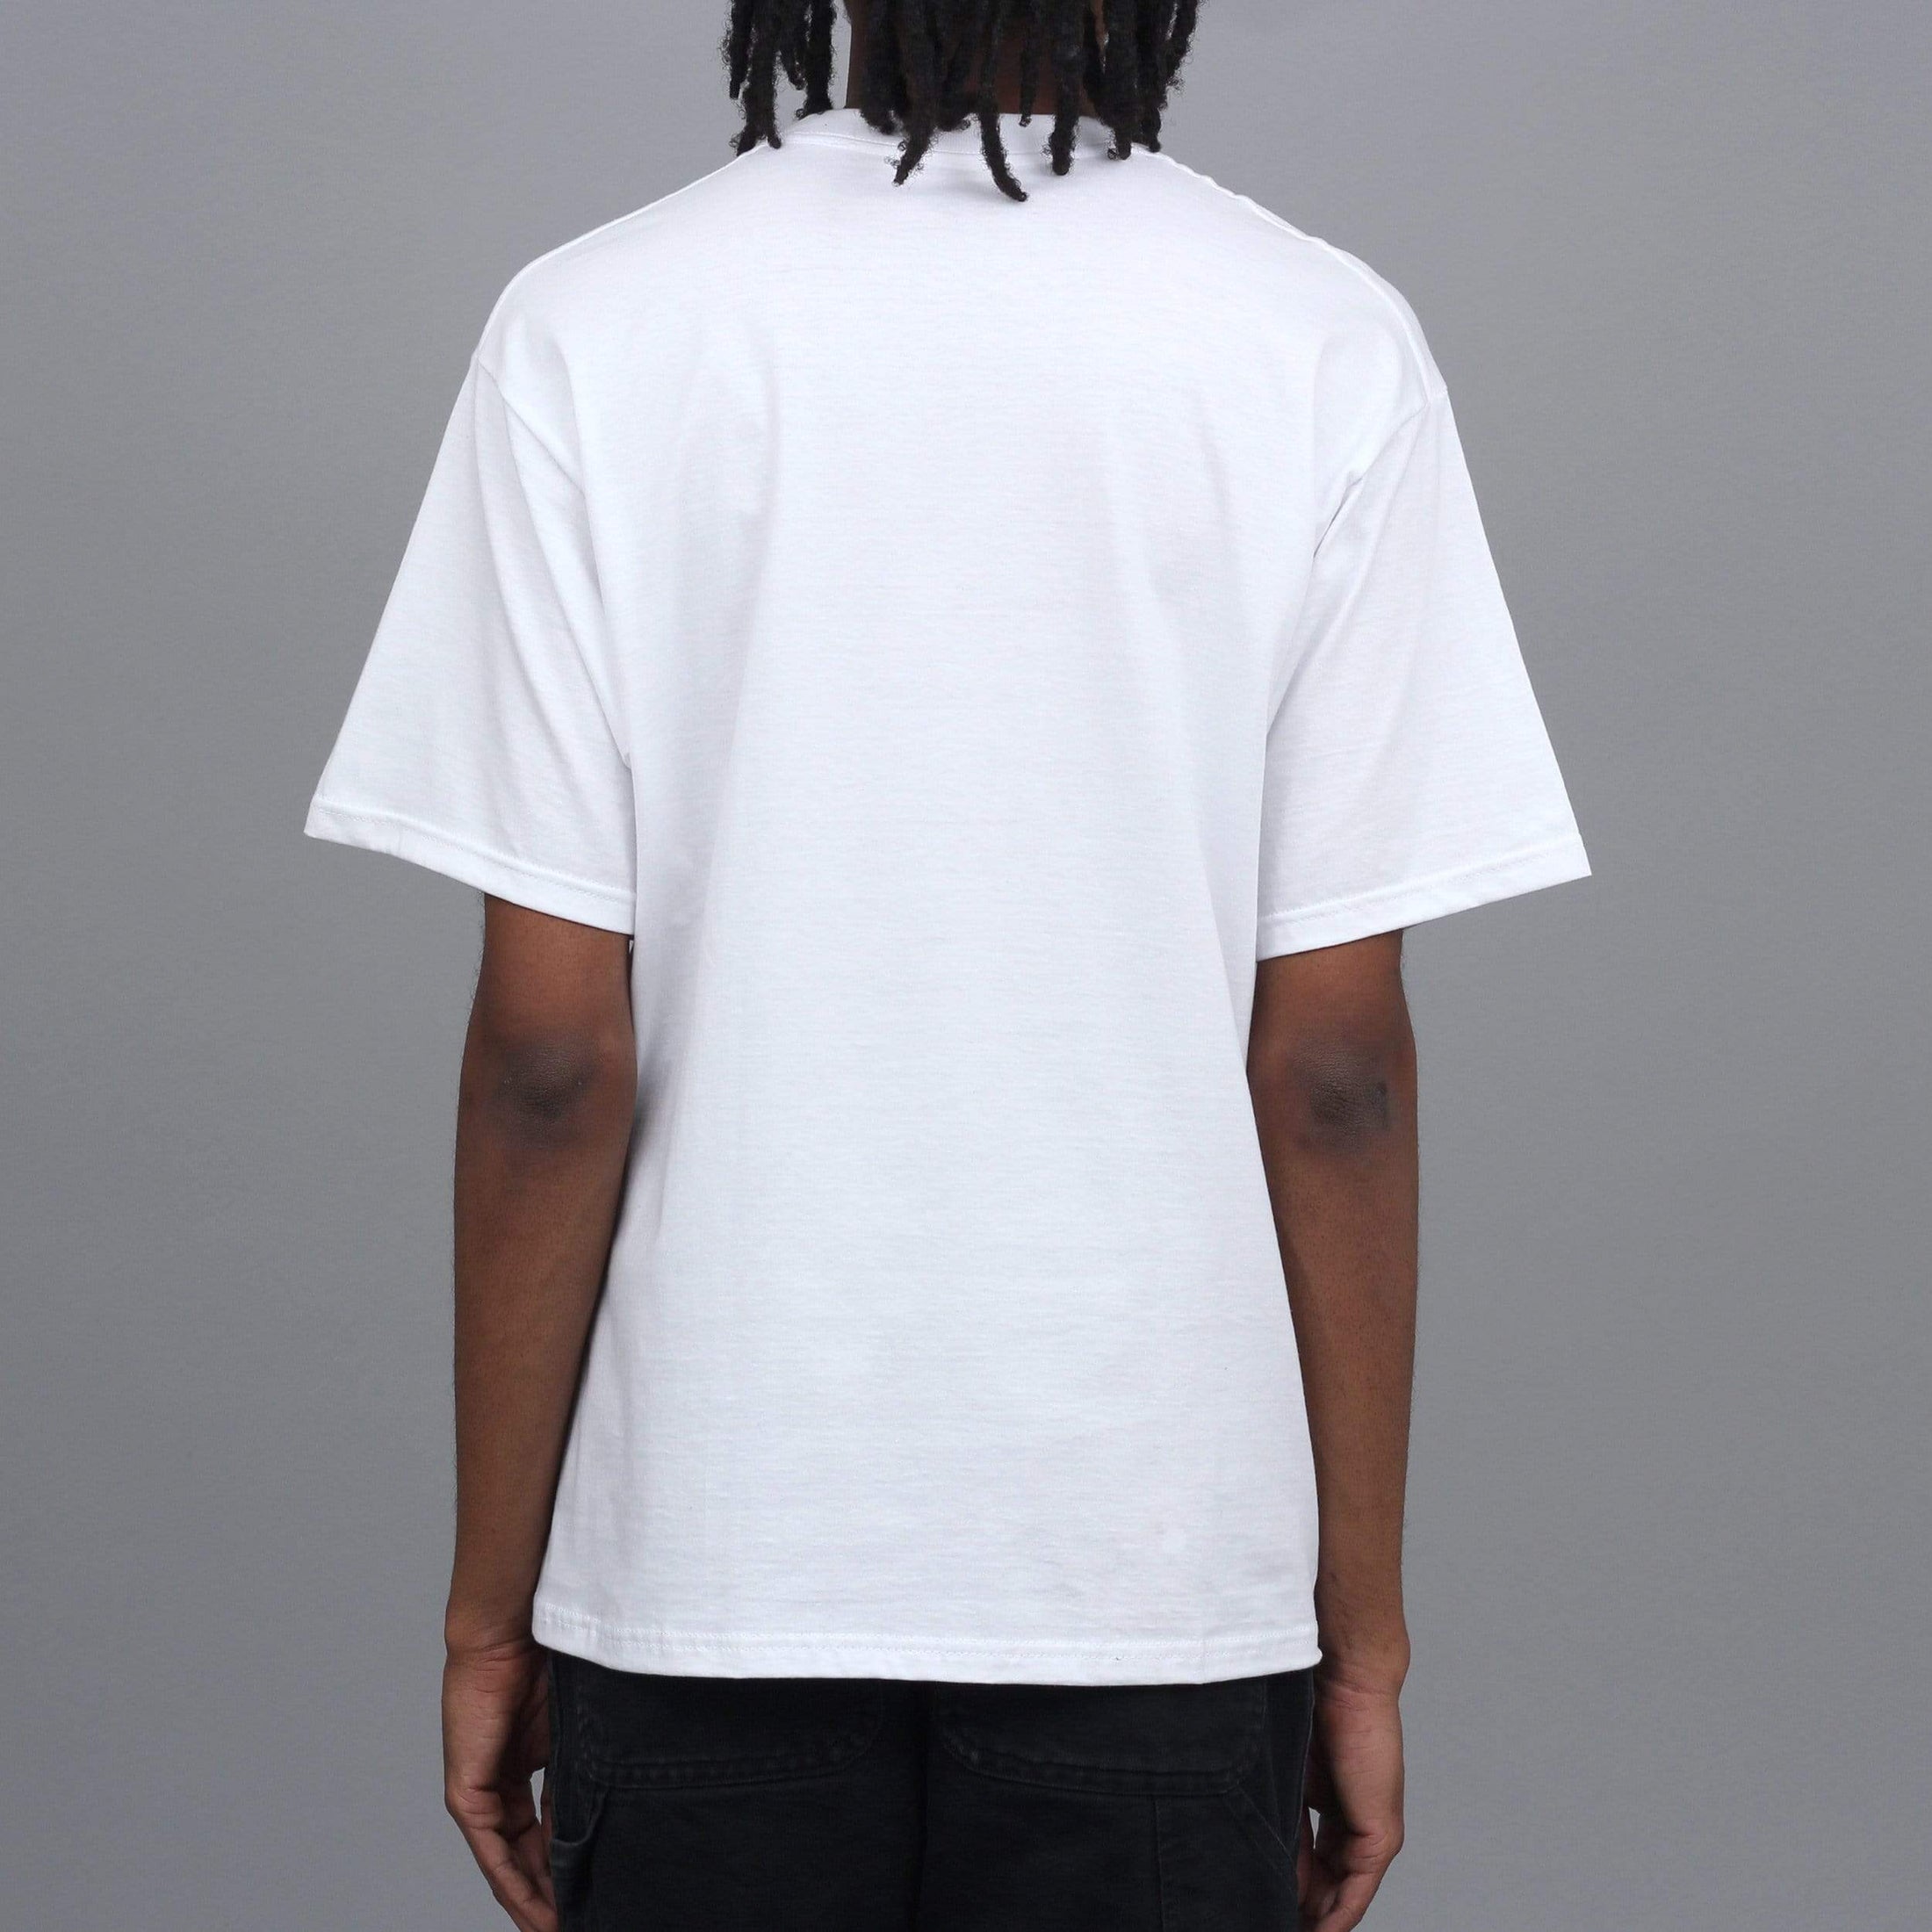 Free Lotti B-Ball T-Shirt White